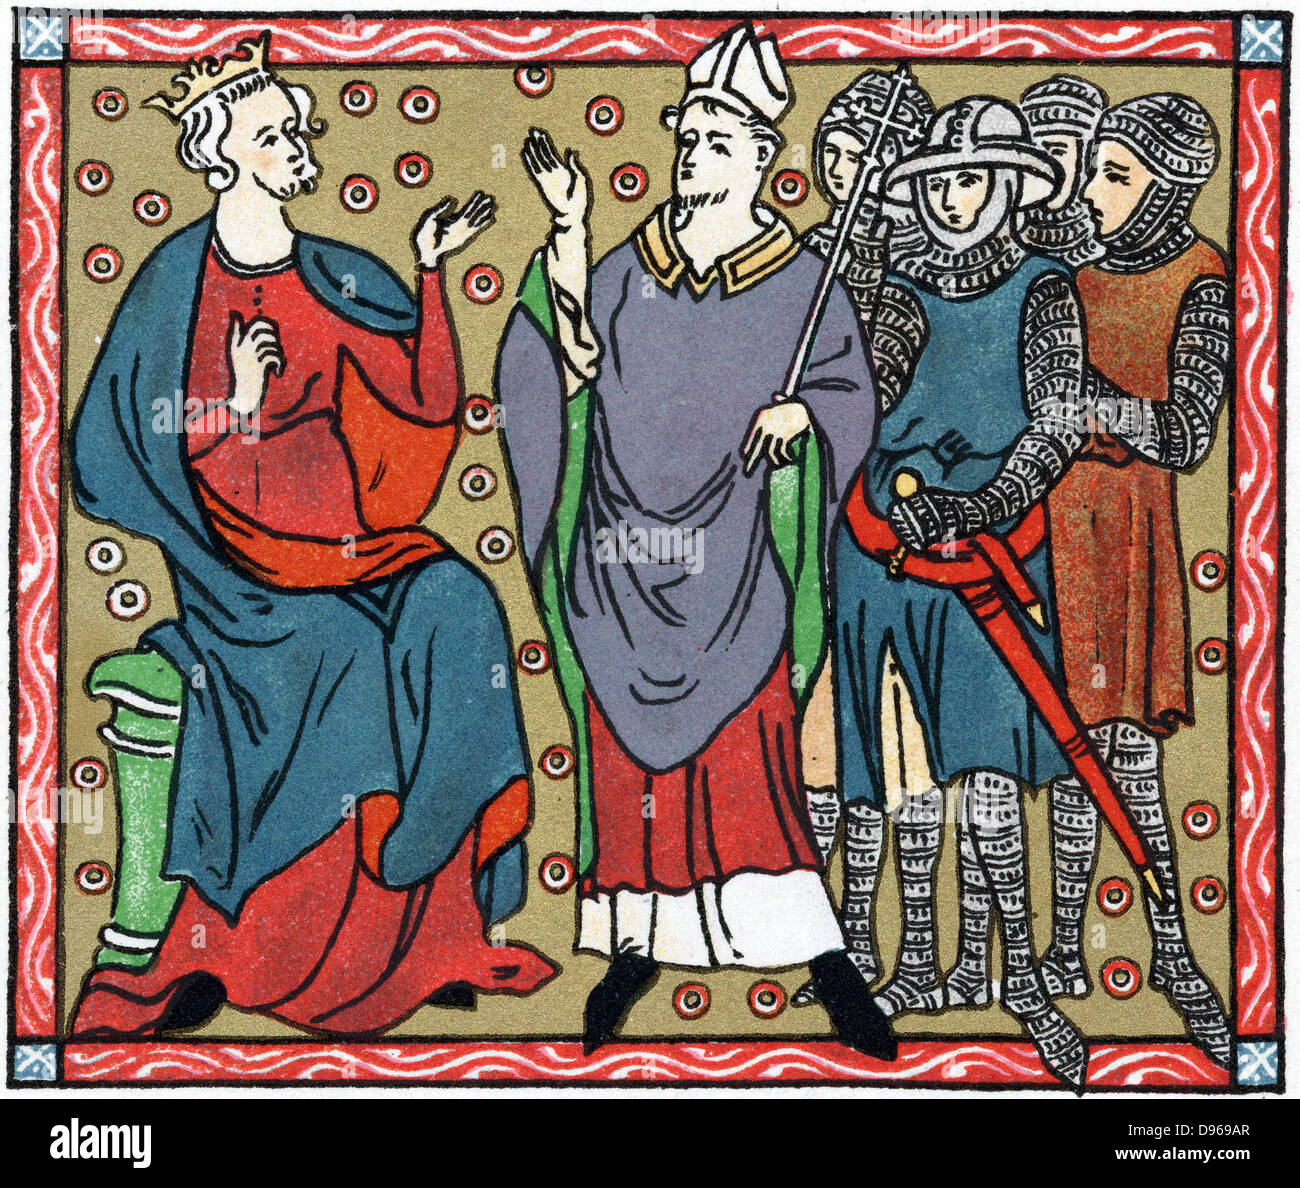 Heinrich II. (1133-1189) König von England von 1154: Henry mit Thomas Becket (1118-1170), Erzbischof von Canterbury. Per e-mail Abbildungen sind vier Ritter, Becket ermordet. Chromolithograph nach mittelalterlichen Handschrift. Stockfoto